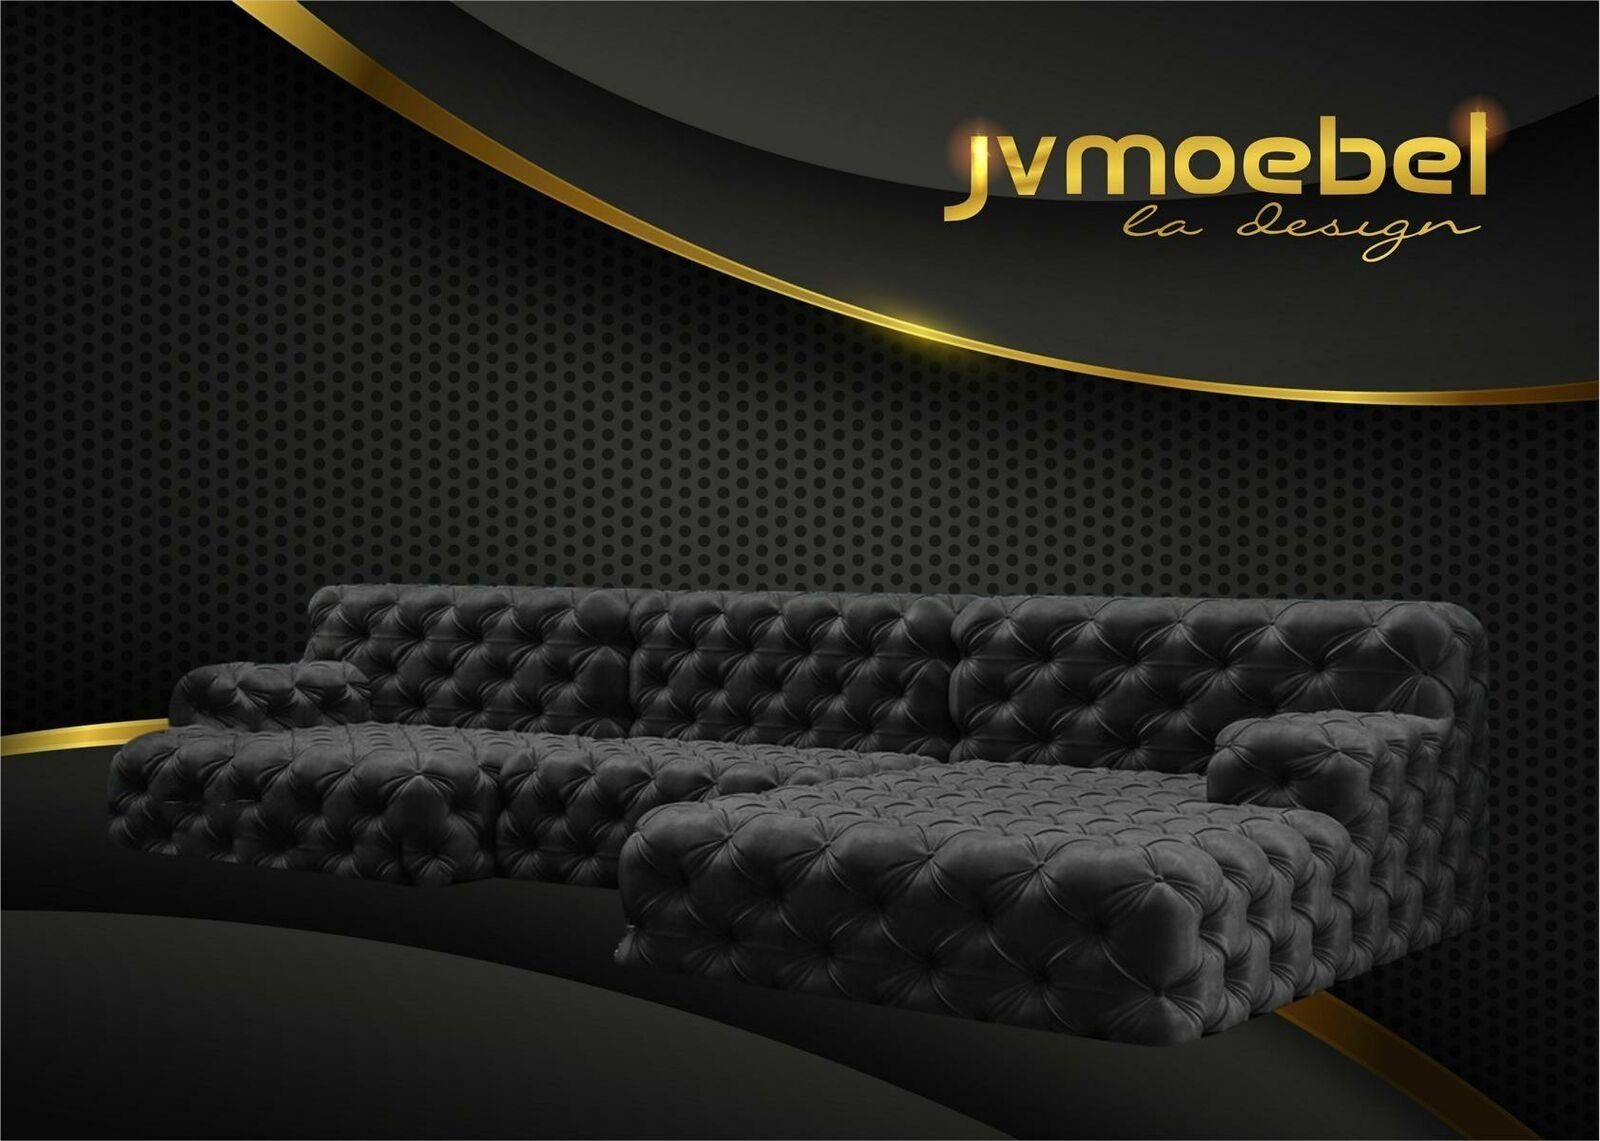 JVmoebel Ecksofa, Chesterfield U-Form Ecksofa Couch Design Polster Textil Garnitur Schwarz | Ecksofas